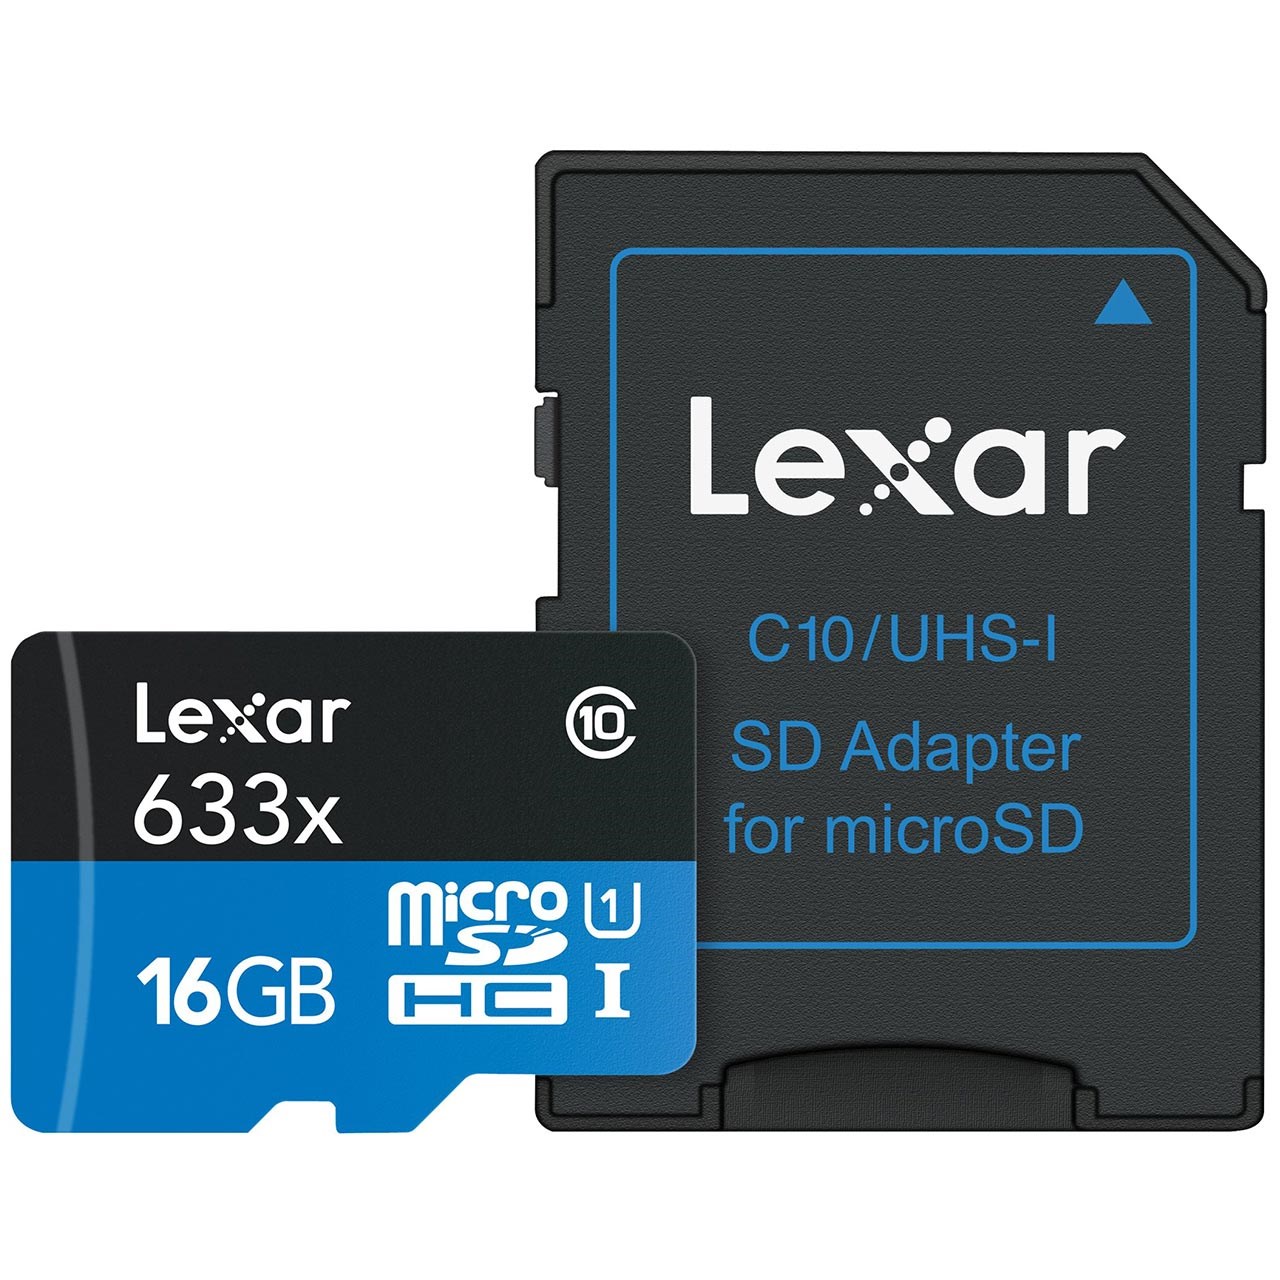 نقد و بررسی کارت حافظه microSDHC لکسار مدل High-Performance کلاس 10 استاندارد UHS-I U1 سرعت 95MBps 633X همراه با آداپتور SD ظرفیت 16 گیگابایت توسط خریداران